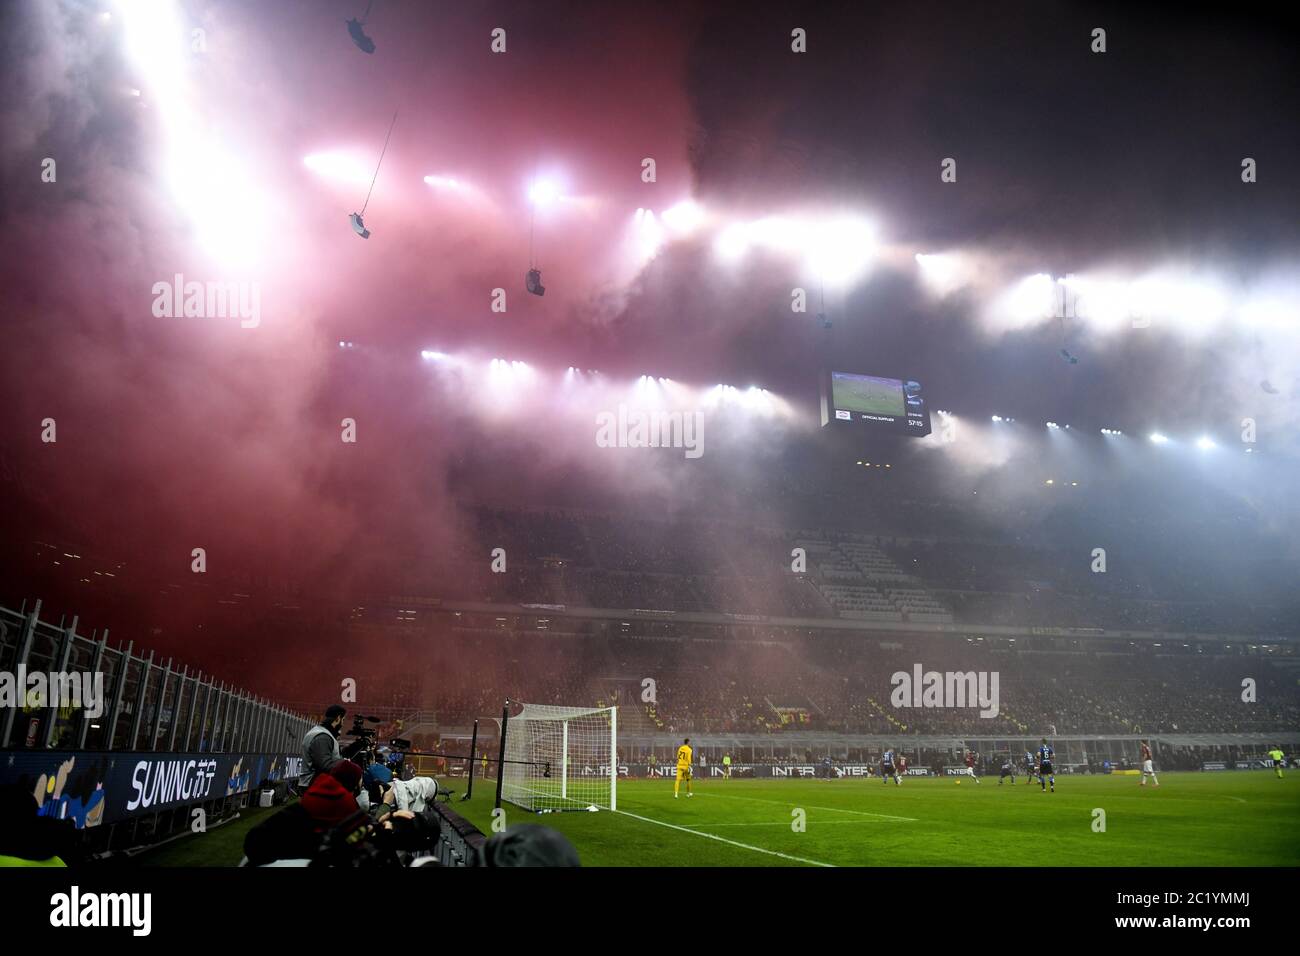 Rauchbomben, die von Fans im fußballstadion von san siro geworfen wurden. Stockfoto